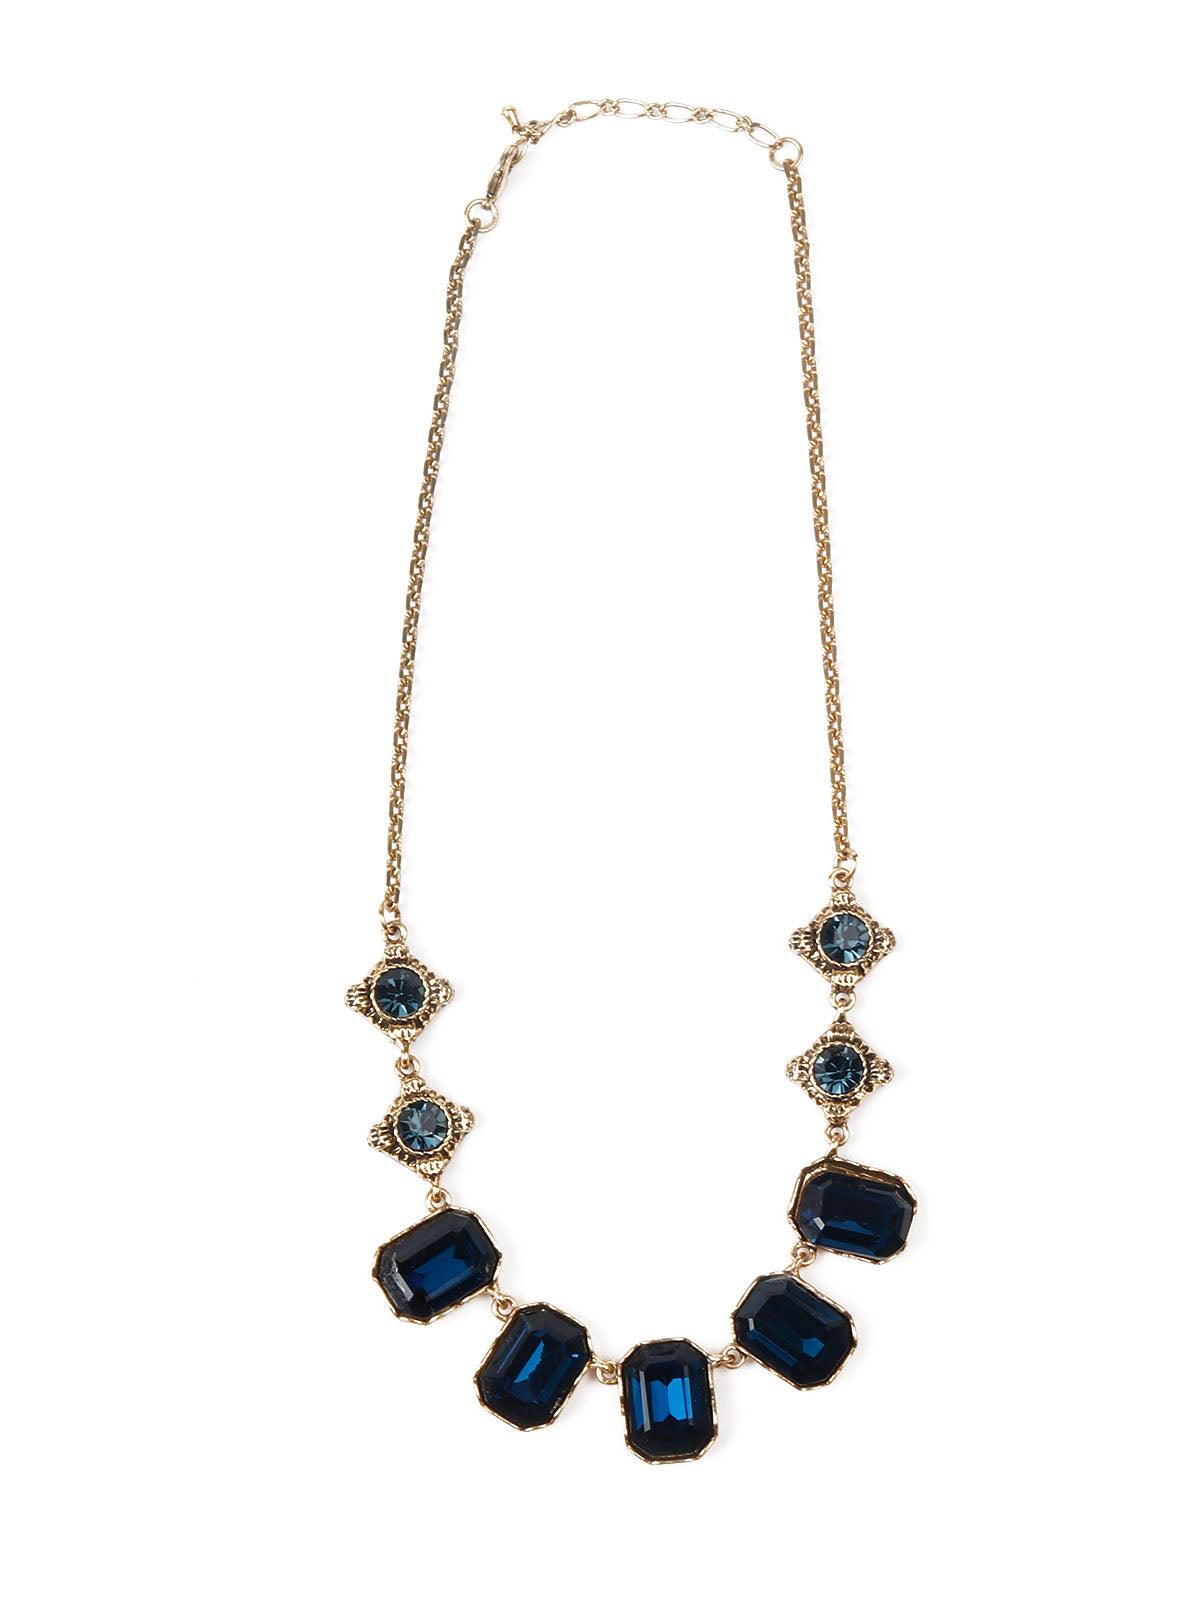 Women's Stylish Blue And Gold Choker Neckpiece - Odette